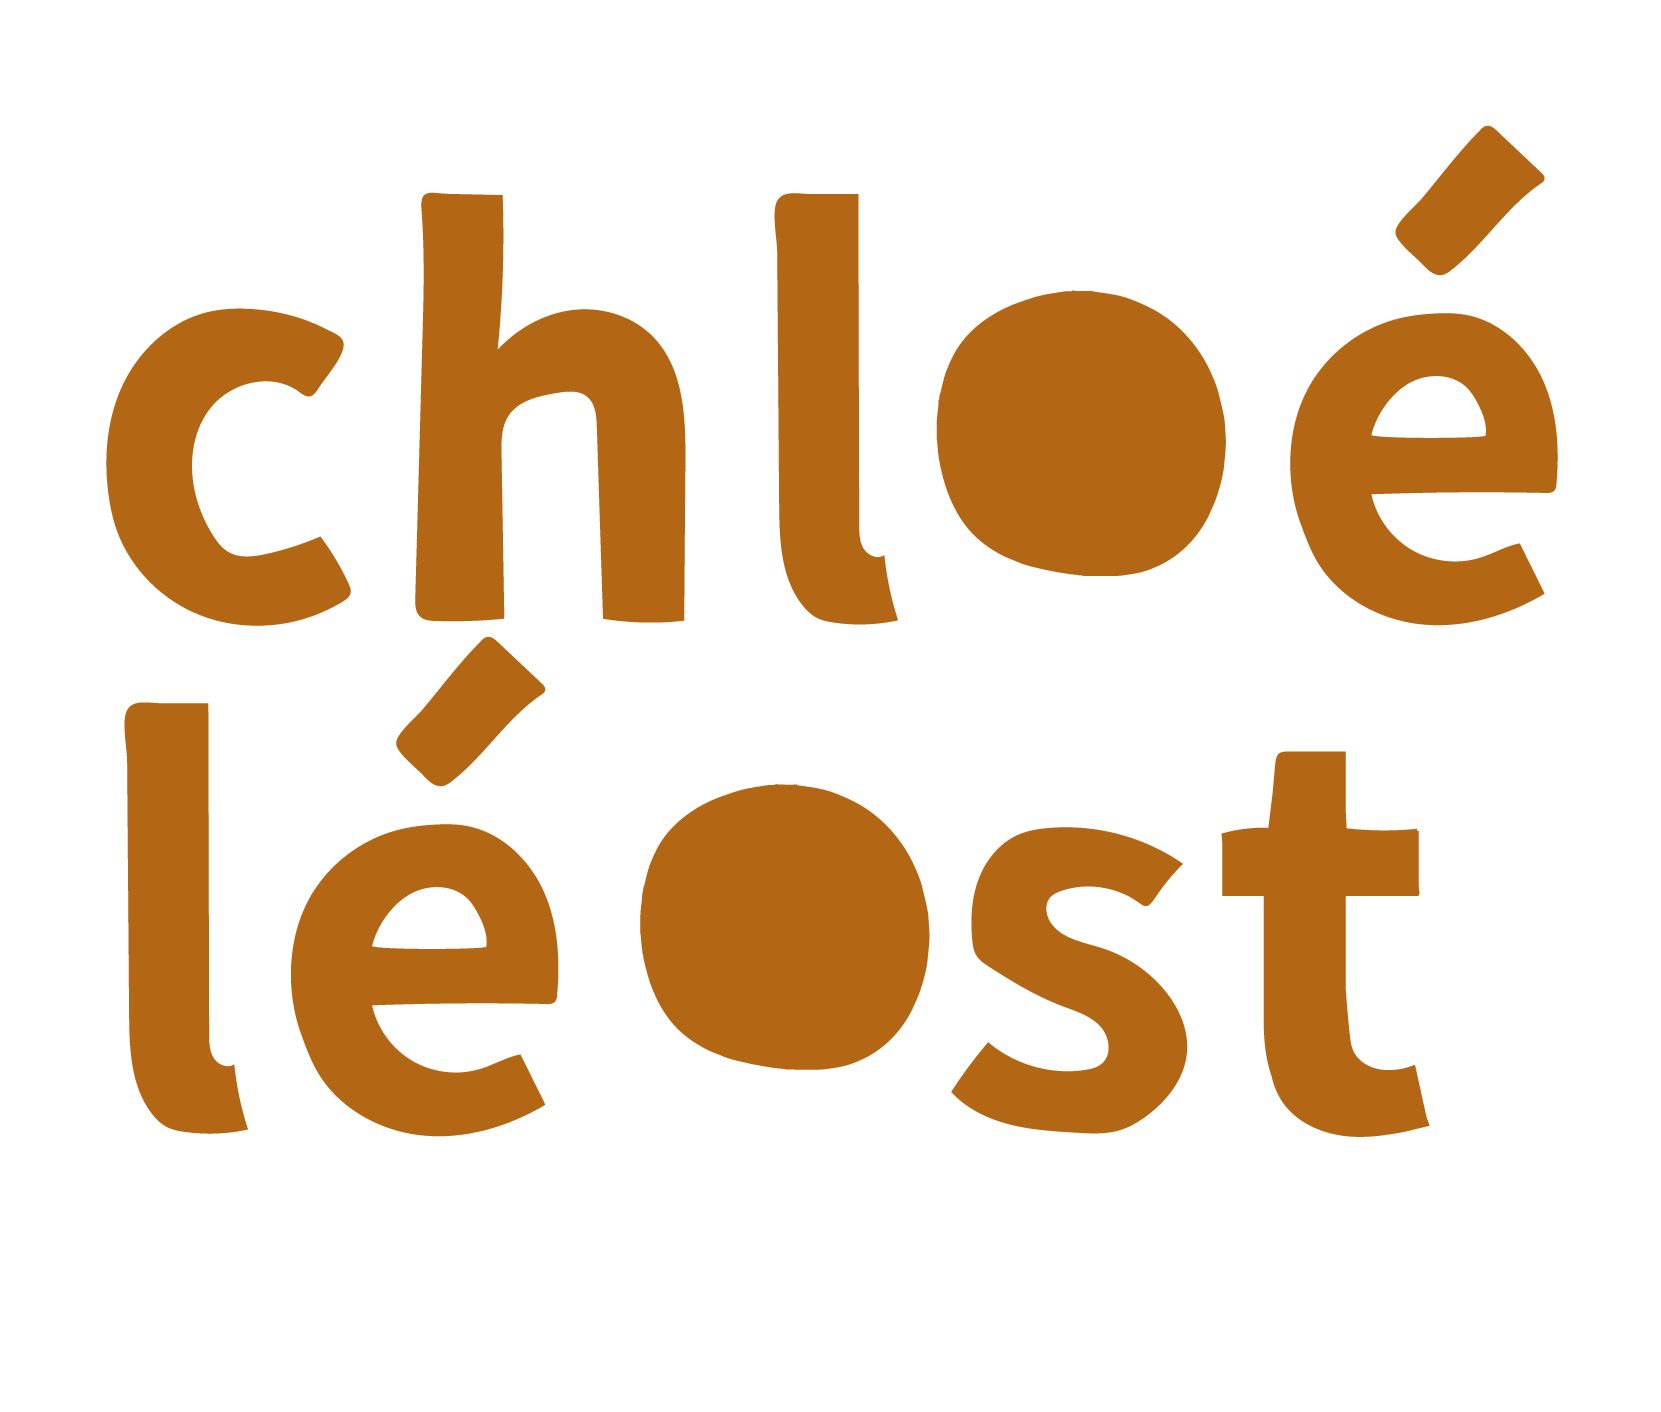 Chloé Léost